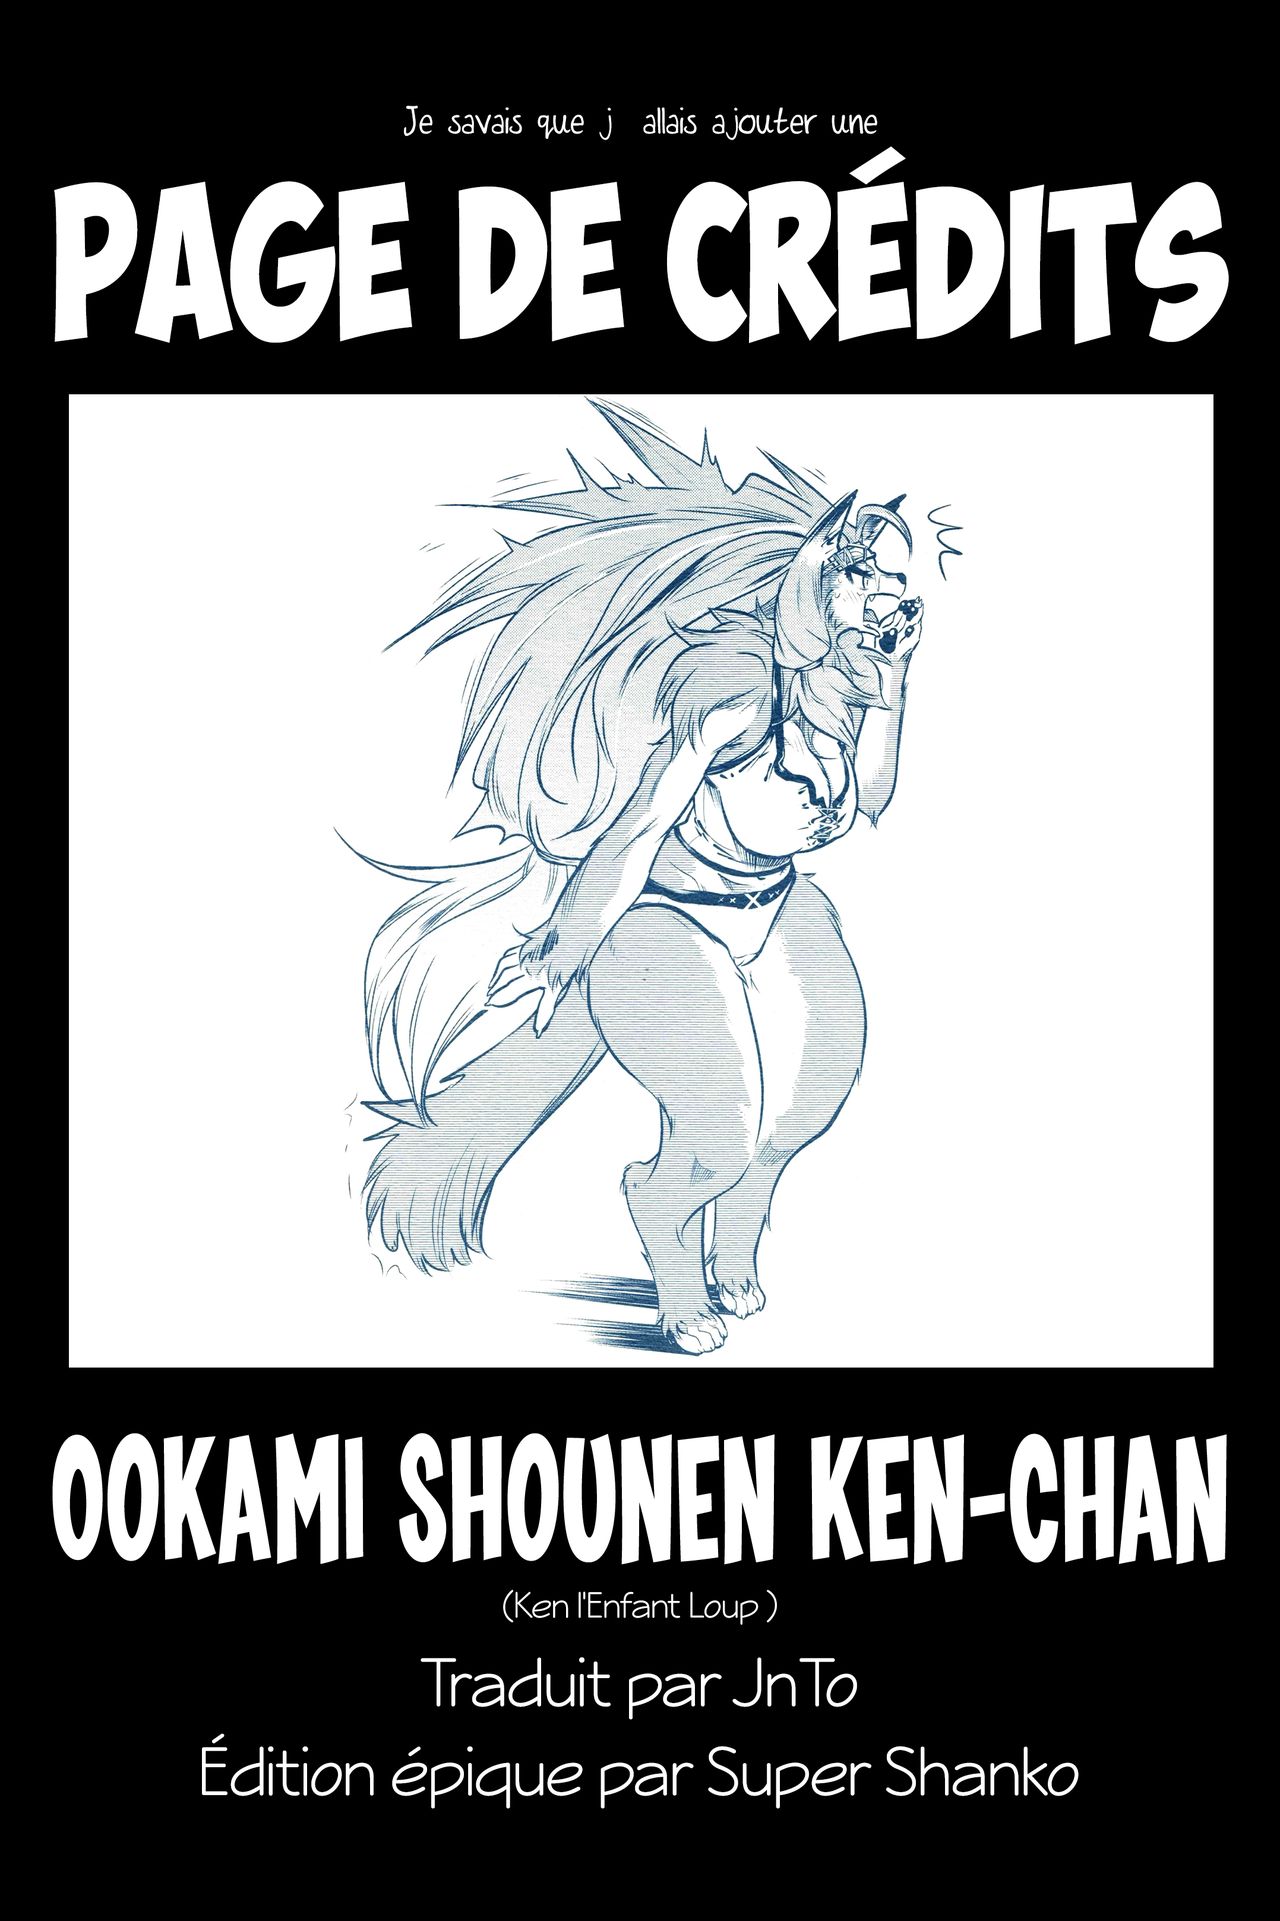 Ookami Shounen Ken-chan numero d'image 22